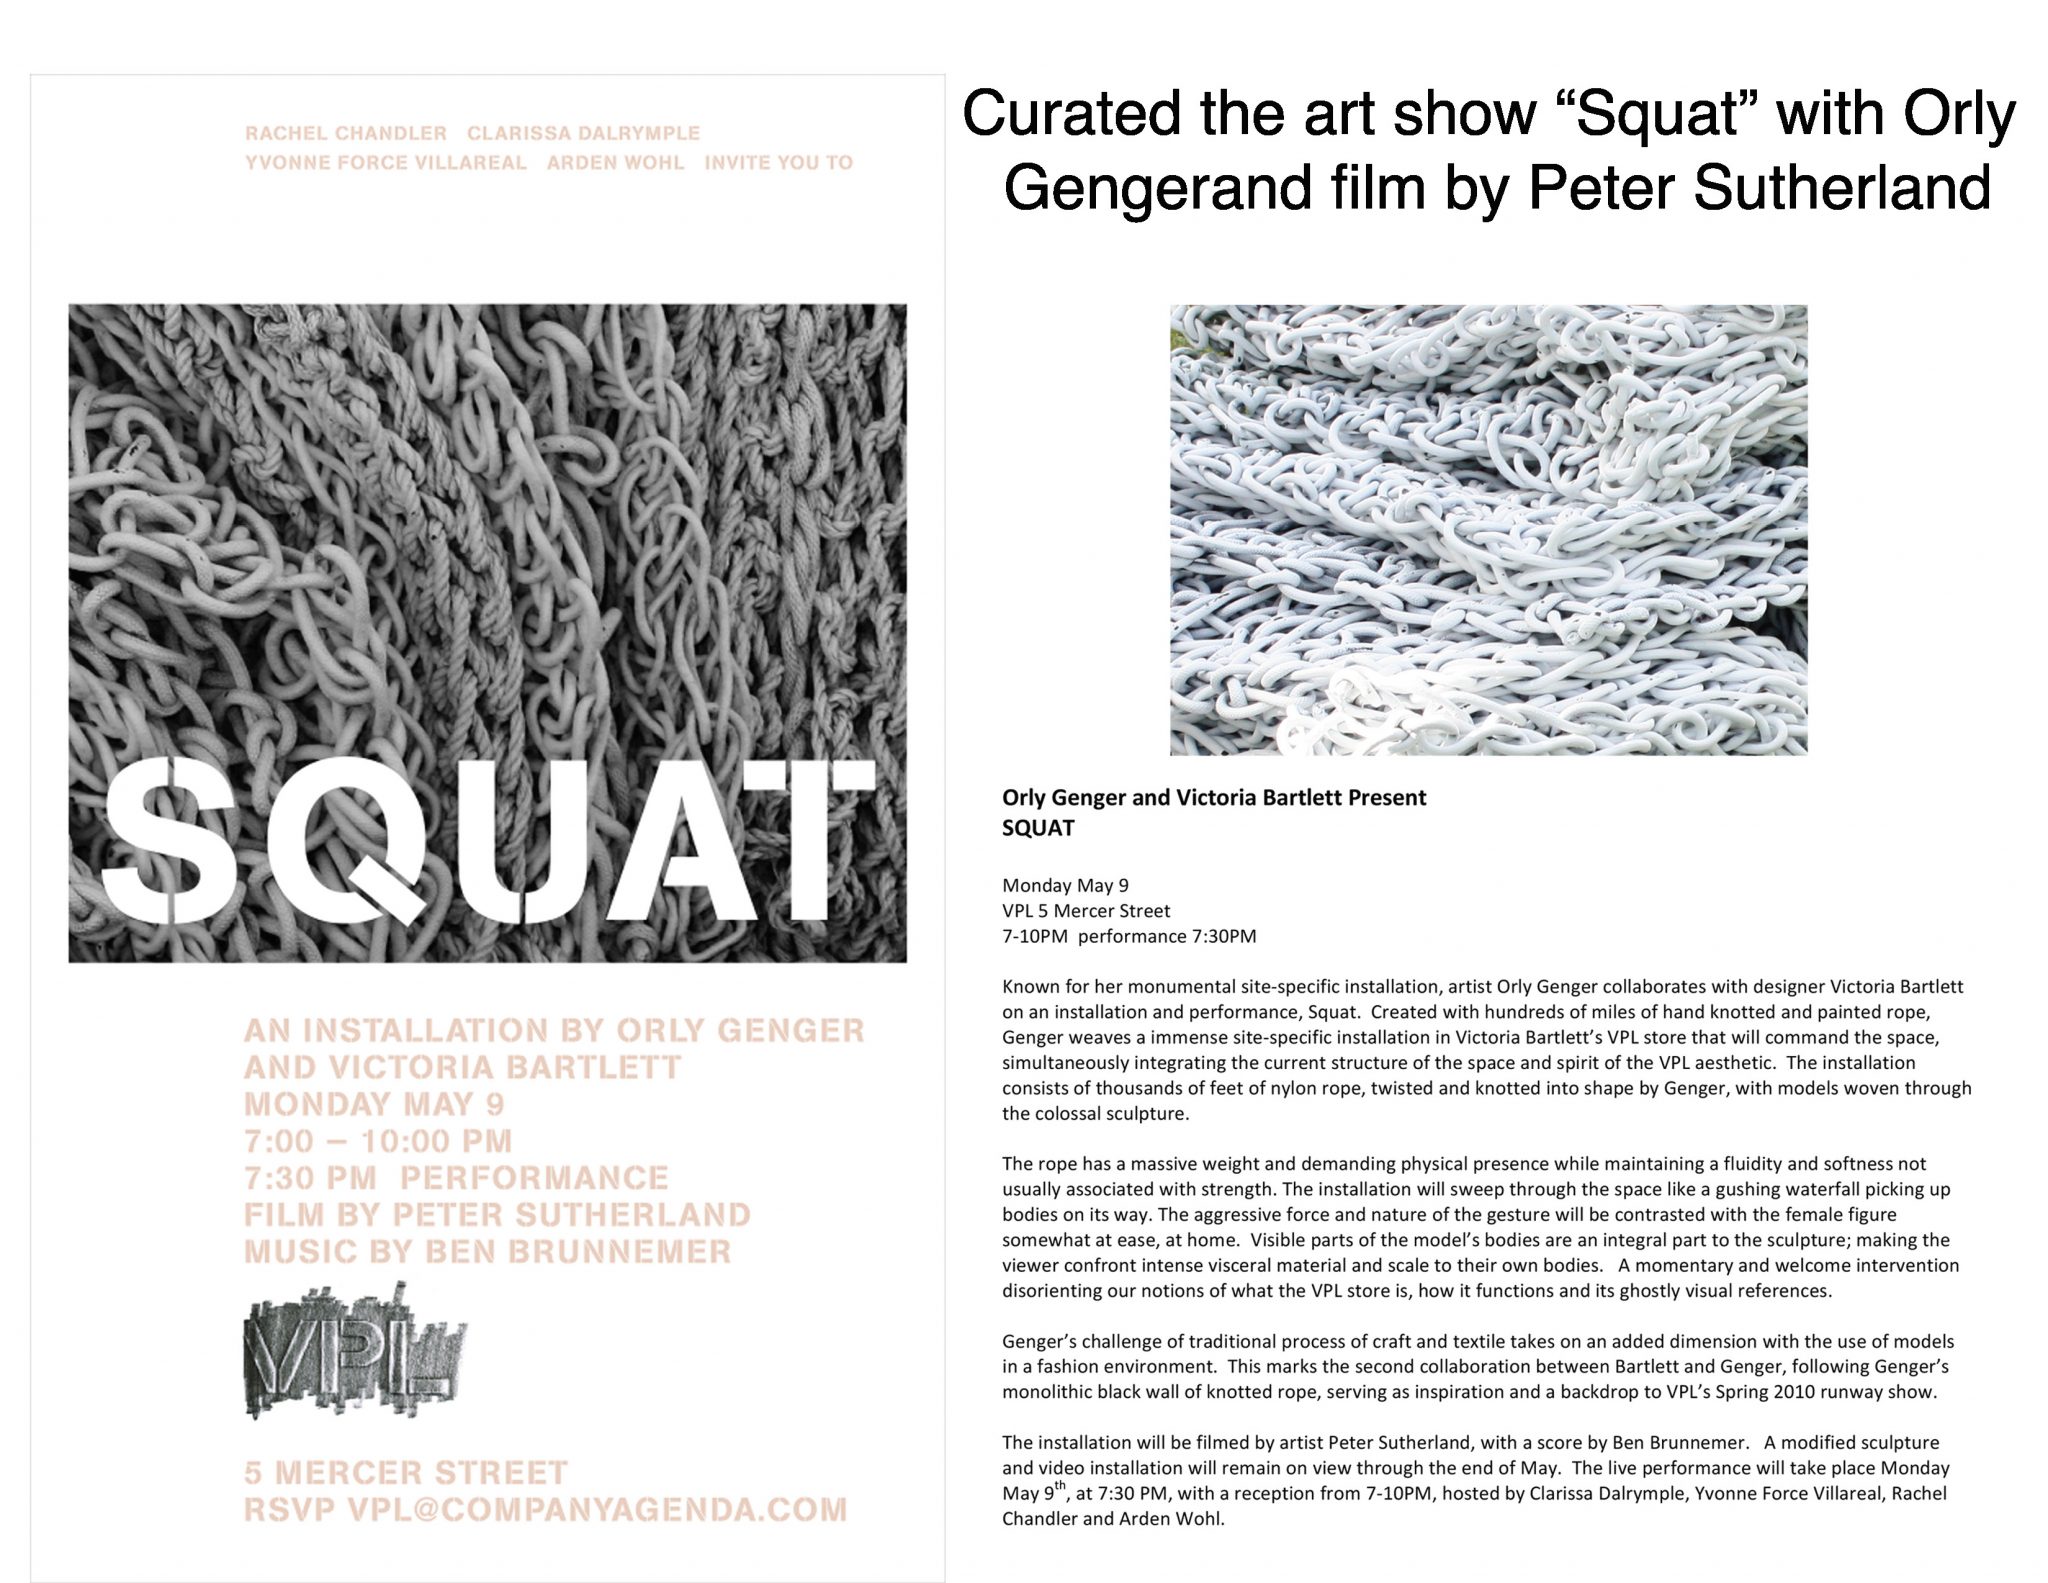  | Squat | 1